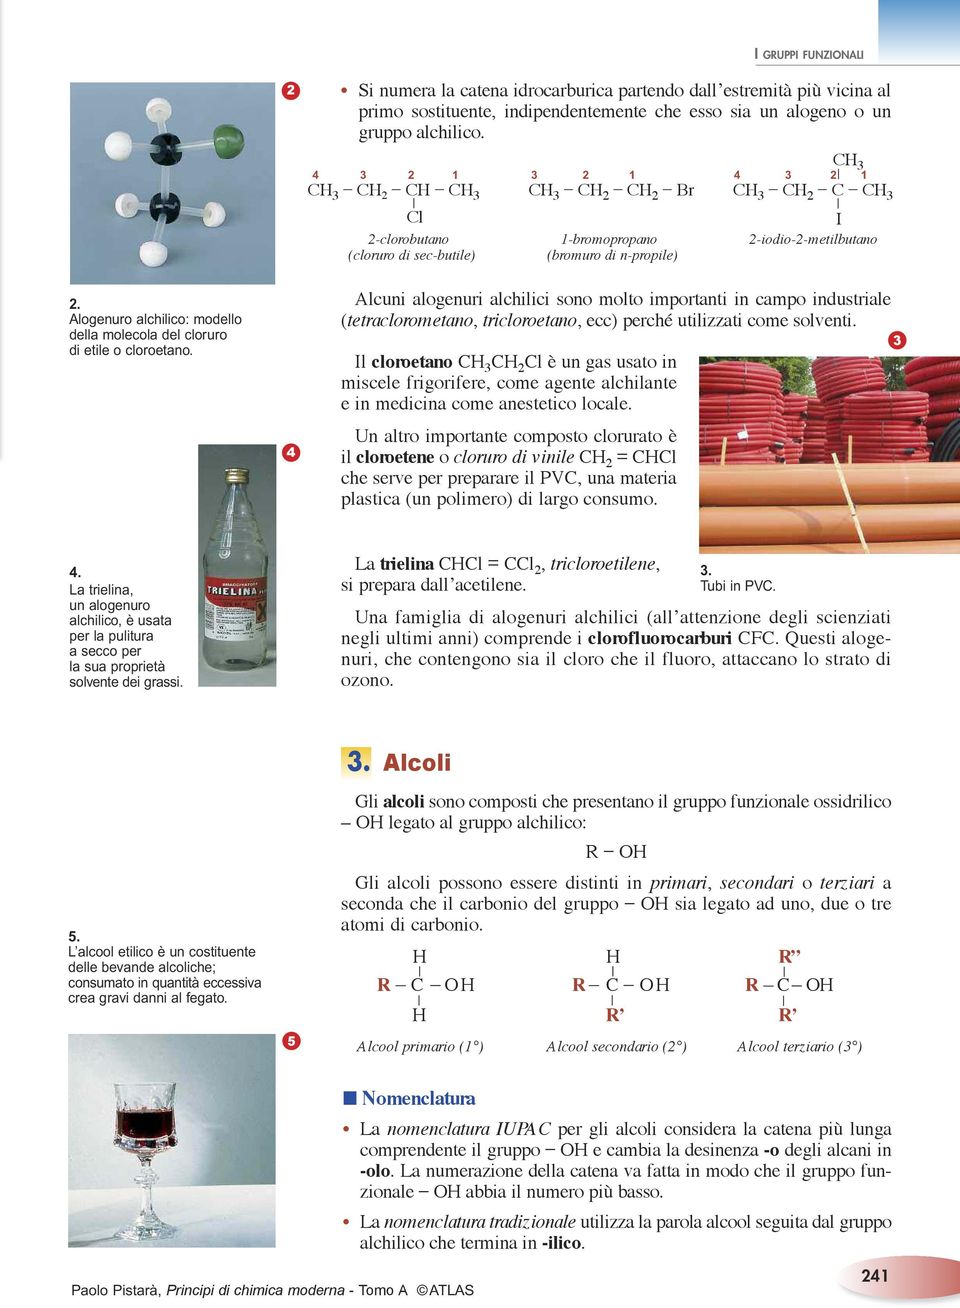 Alogenuro alchilico modello della molecola del cloruro di etile o cloroetano.